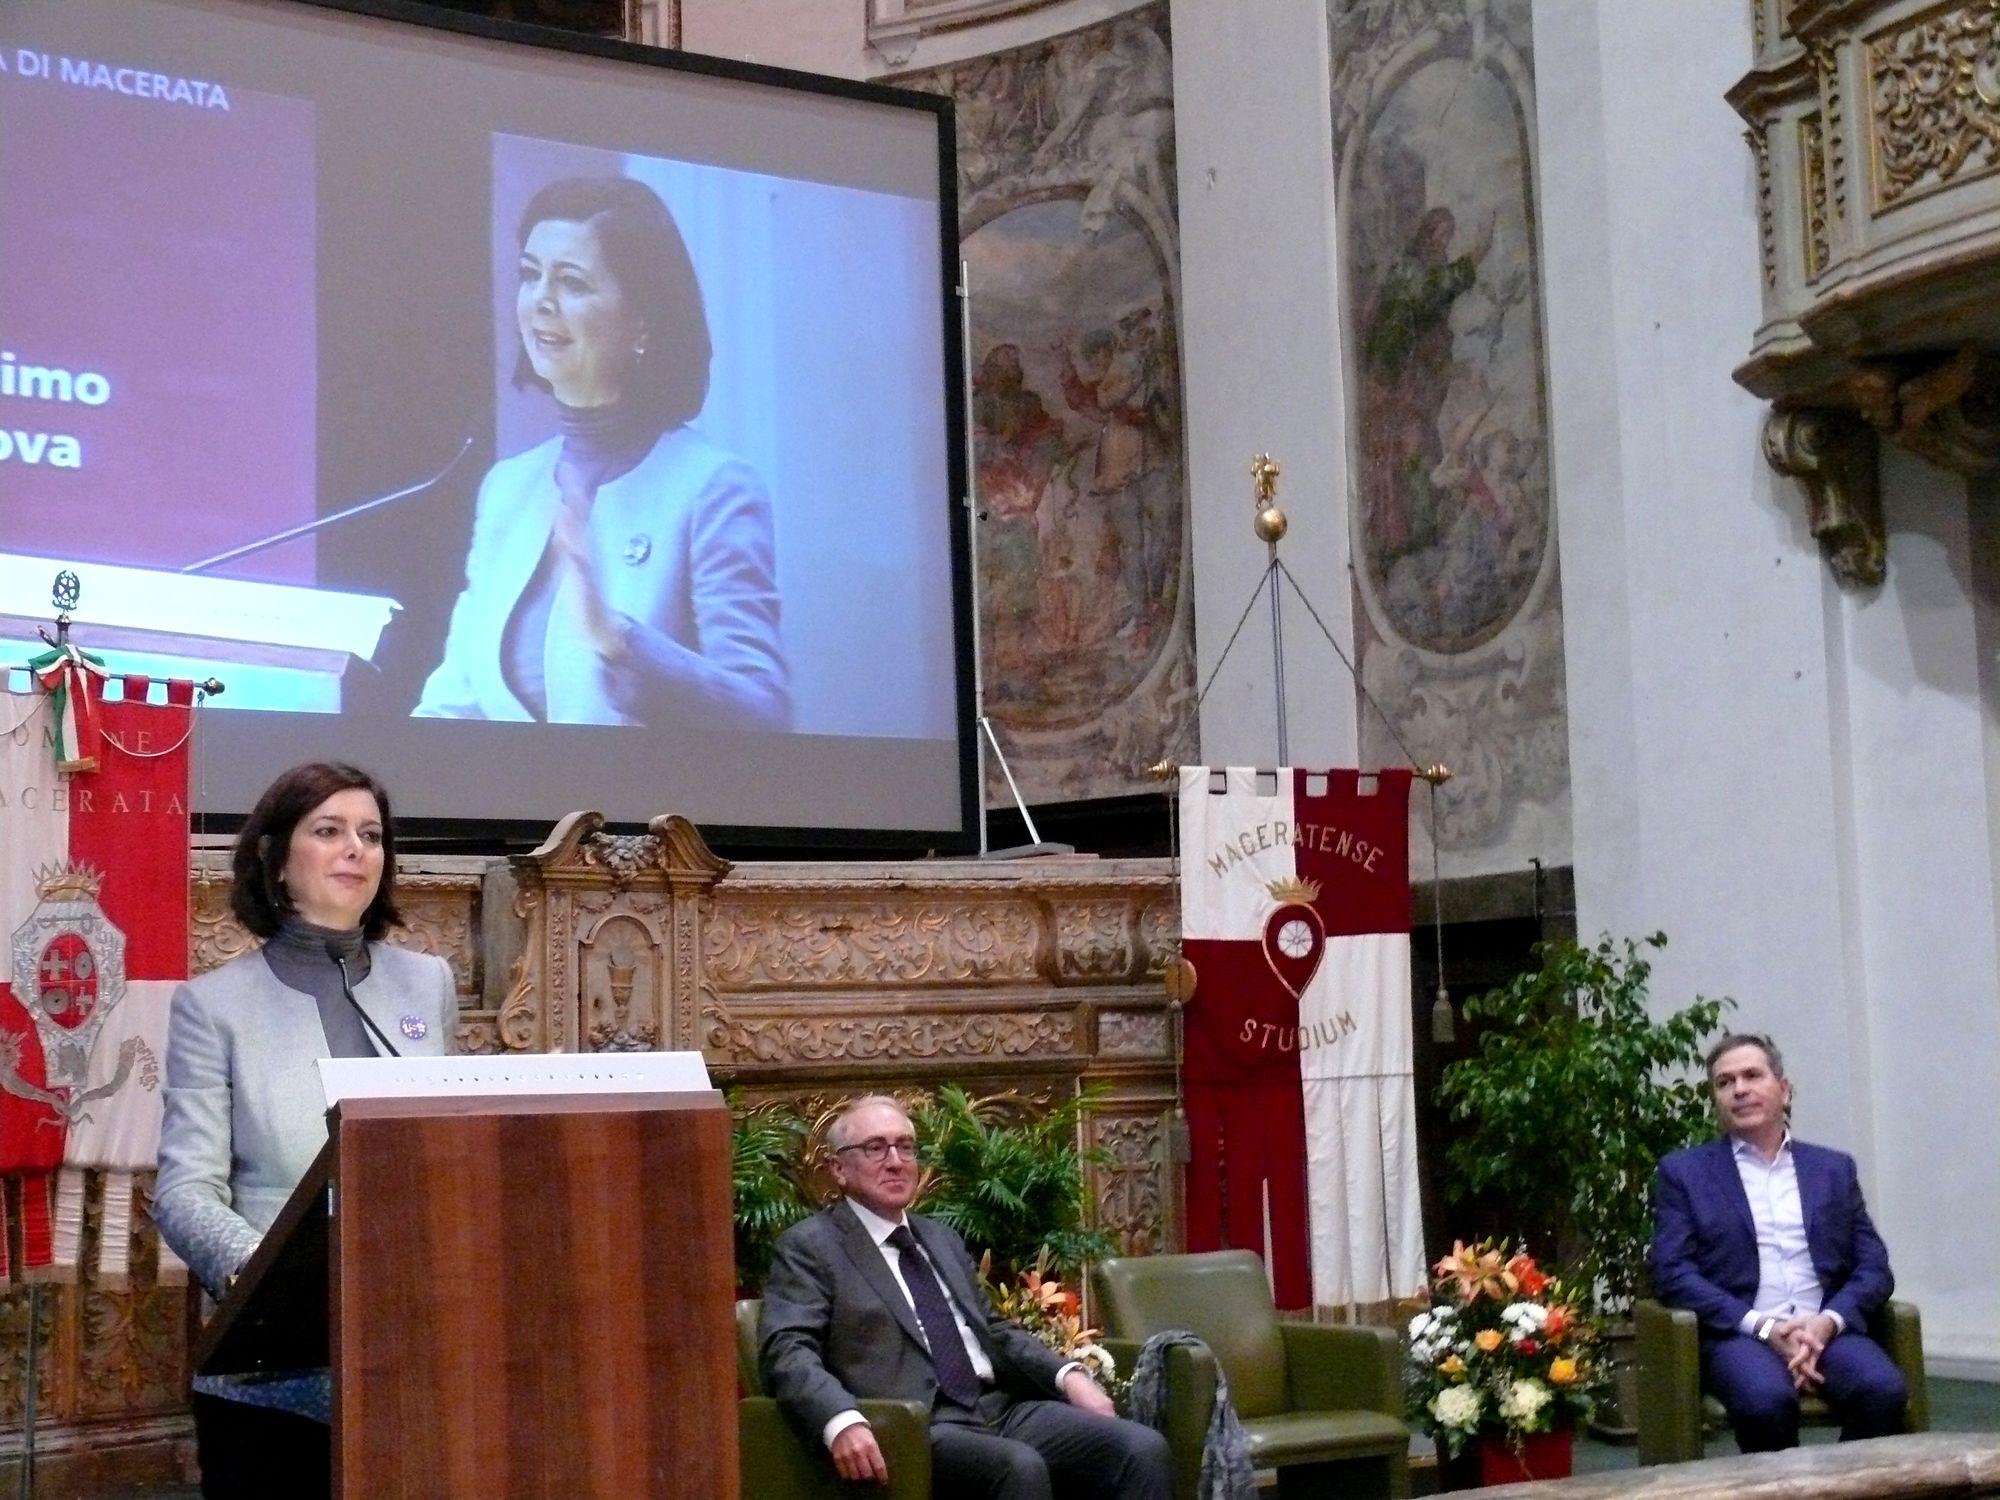 Laura Boldrini all’Università di Macerata: “Partire dai cittadini per costruire gli Stati Uniti d’Europa”